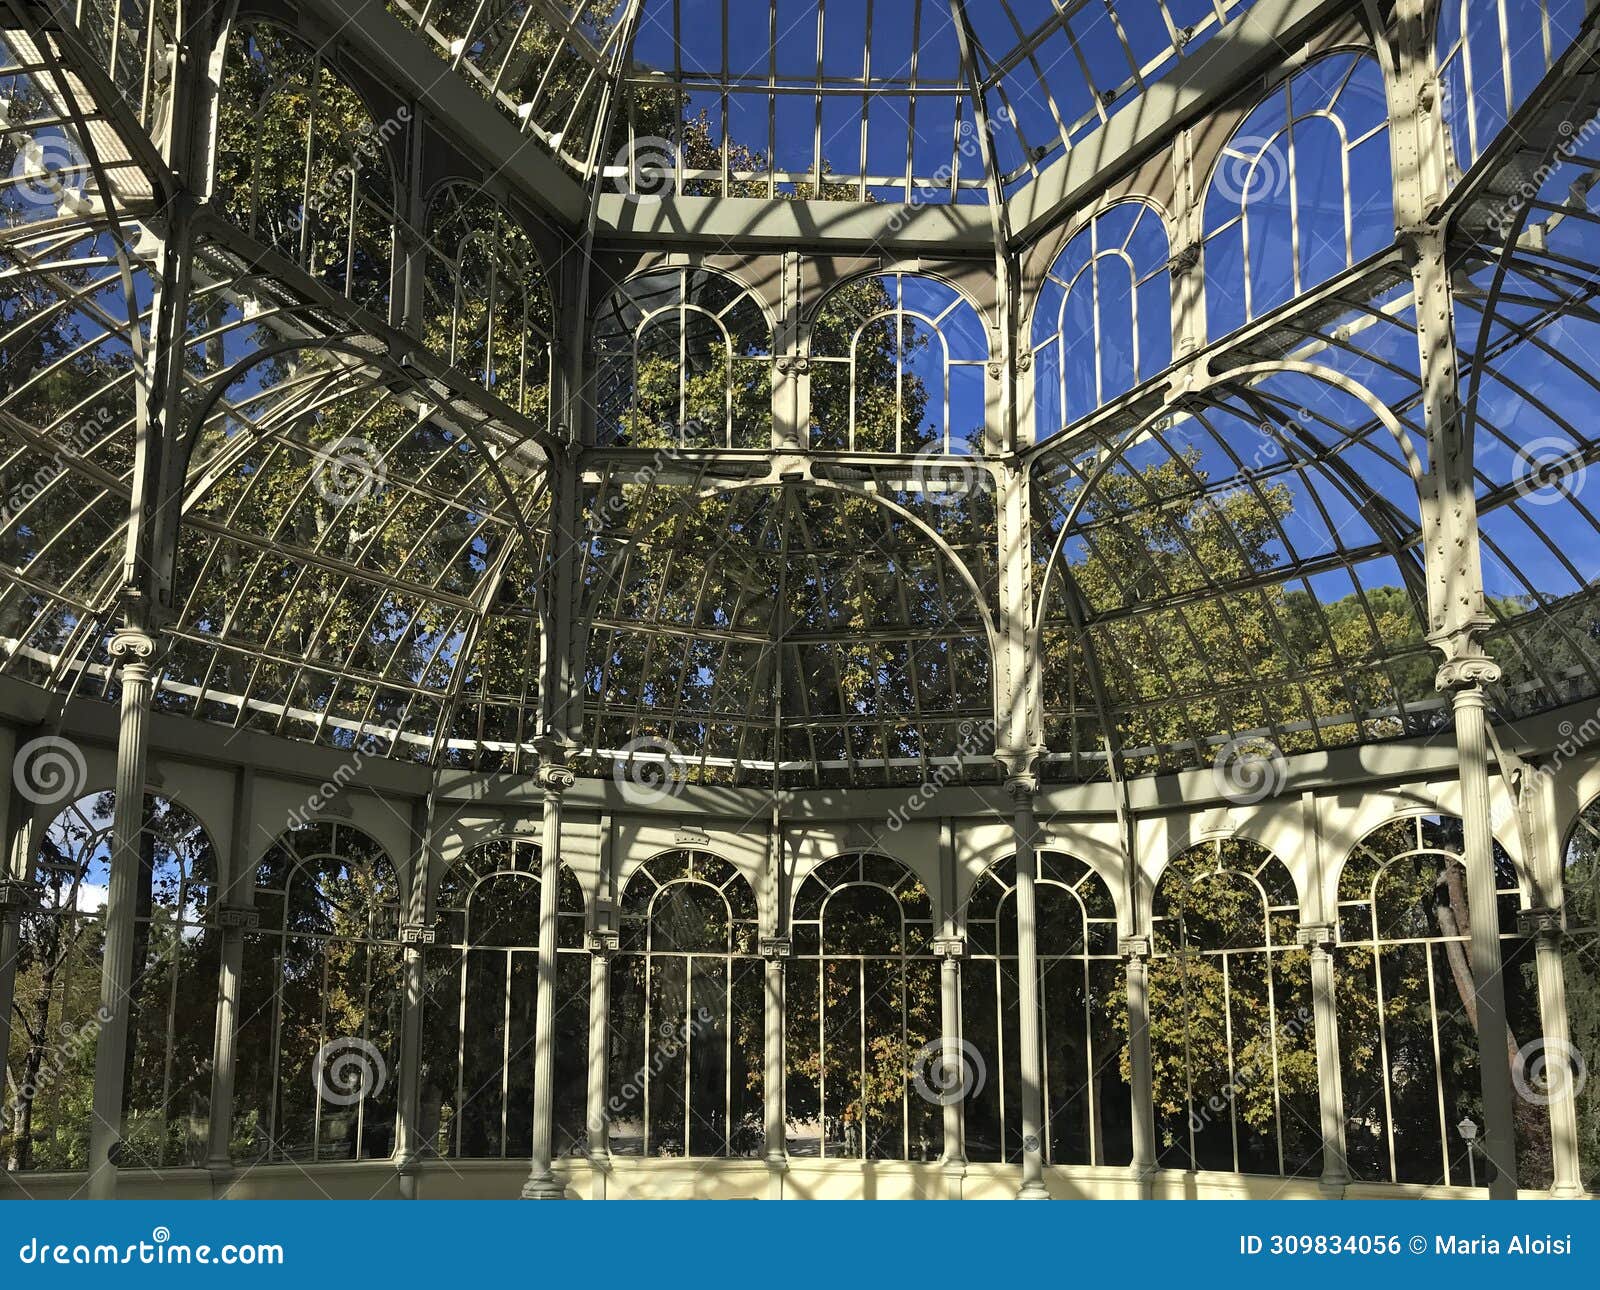 palacio de cristal, originally a greenhouse, located in the de el retiro park in madrid, spainp